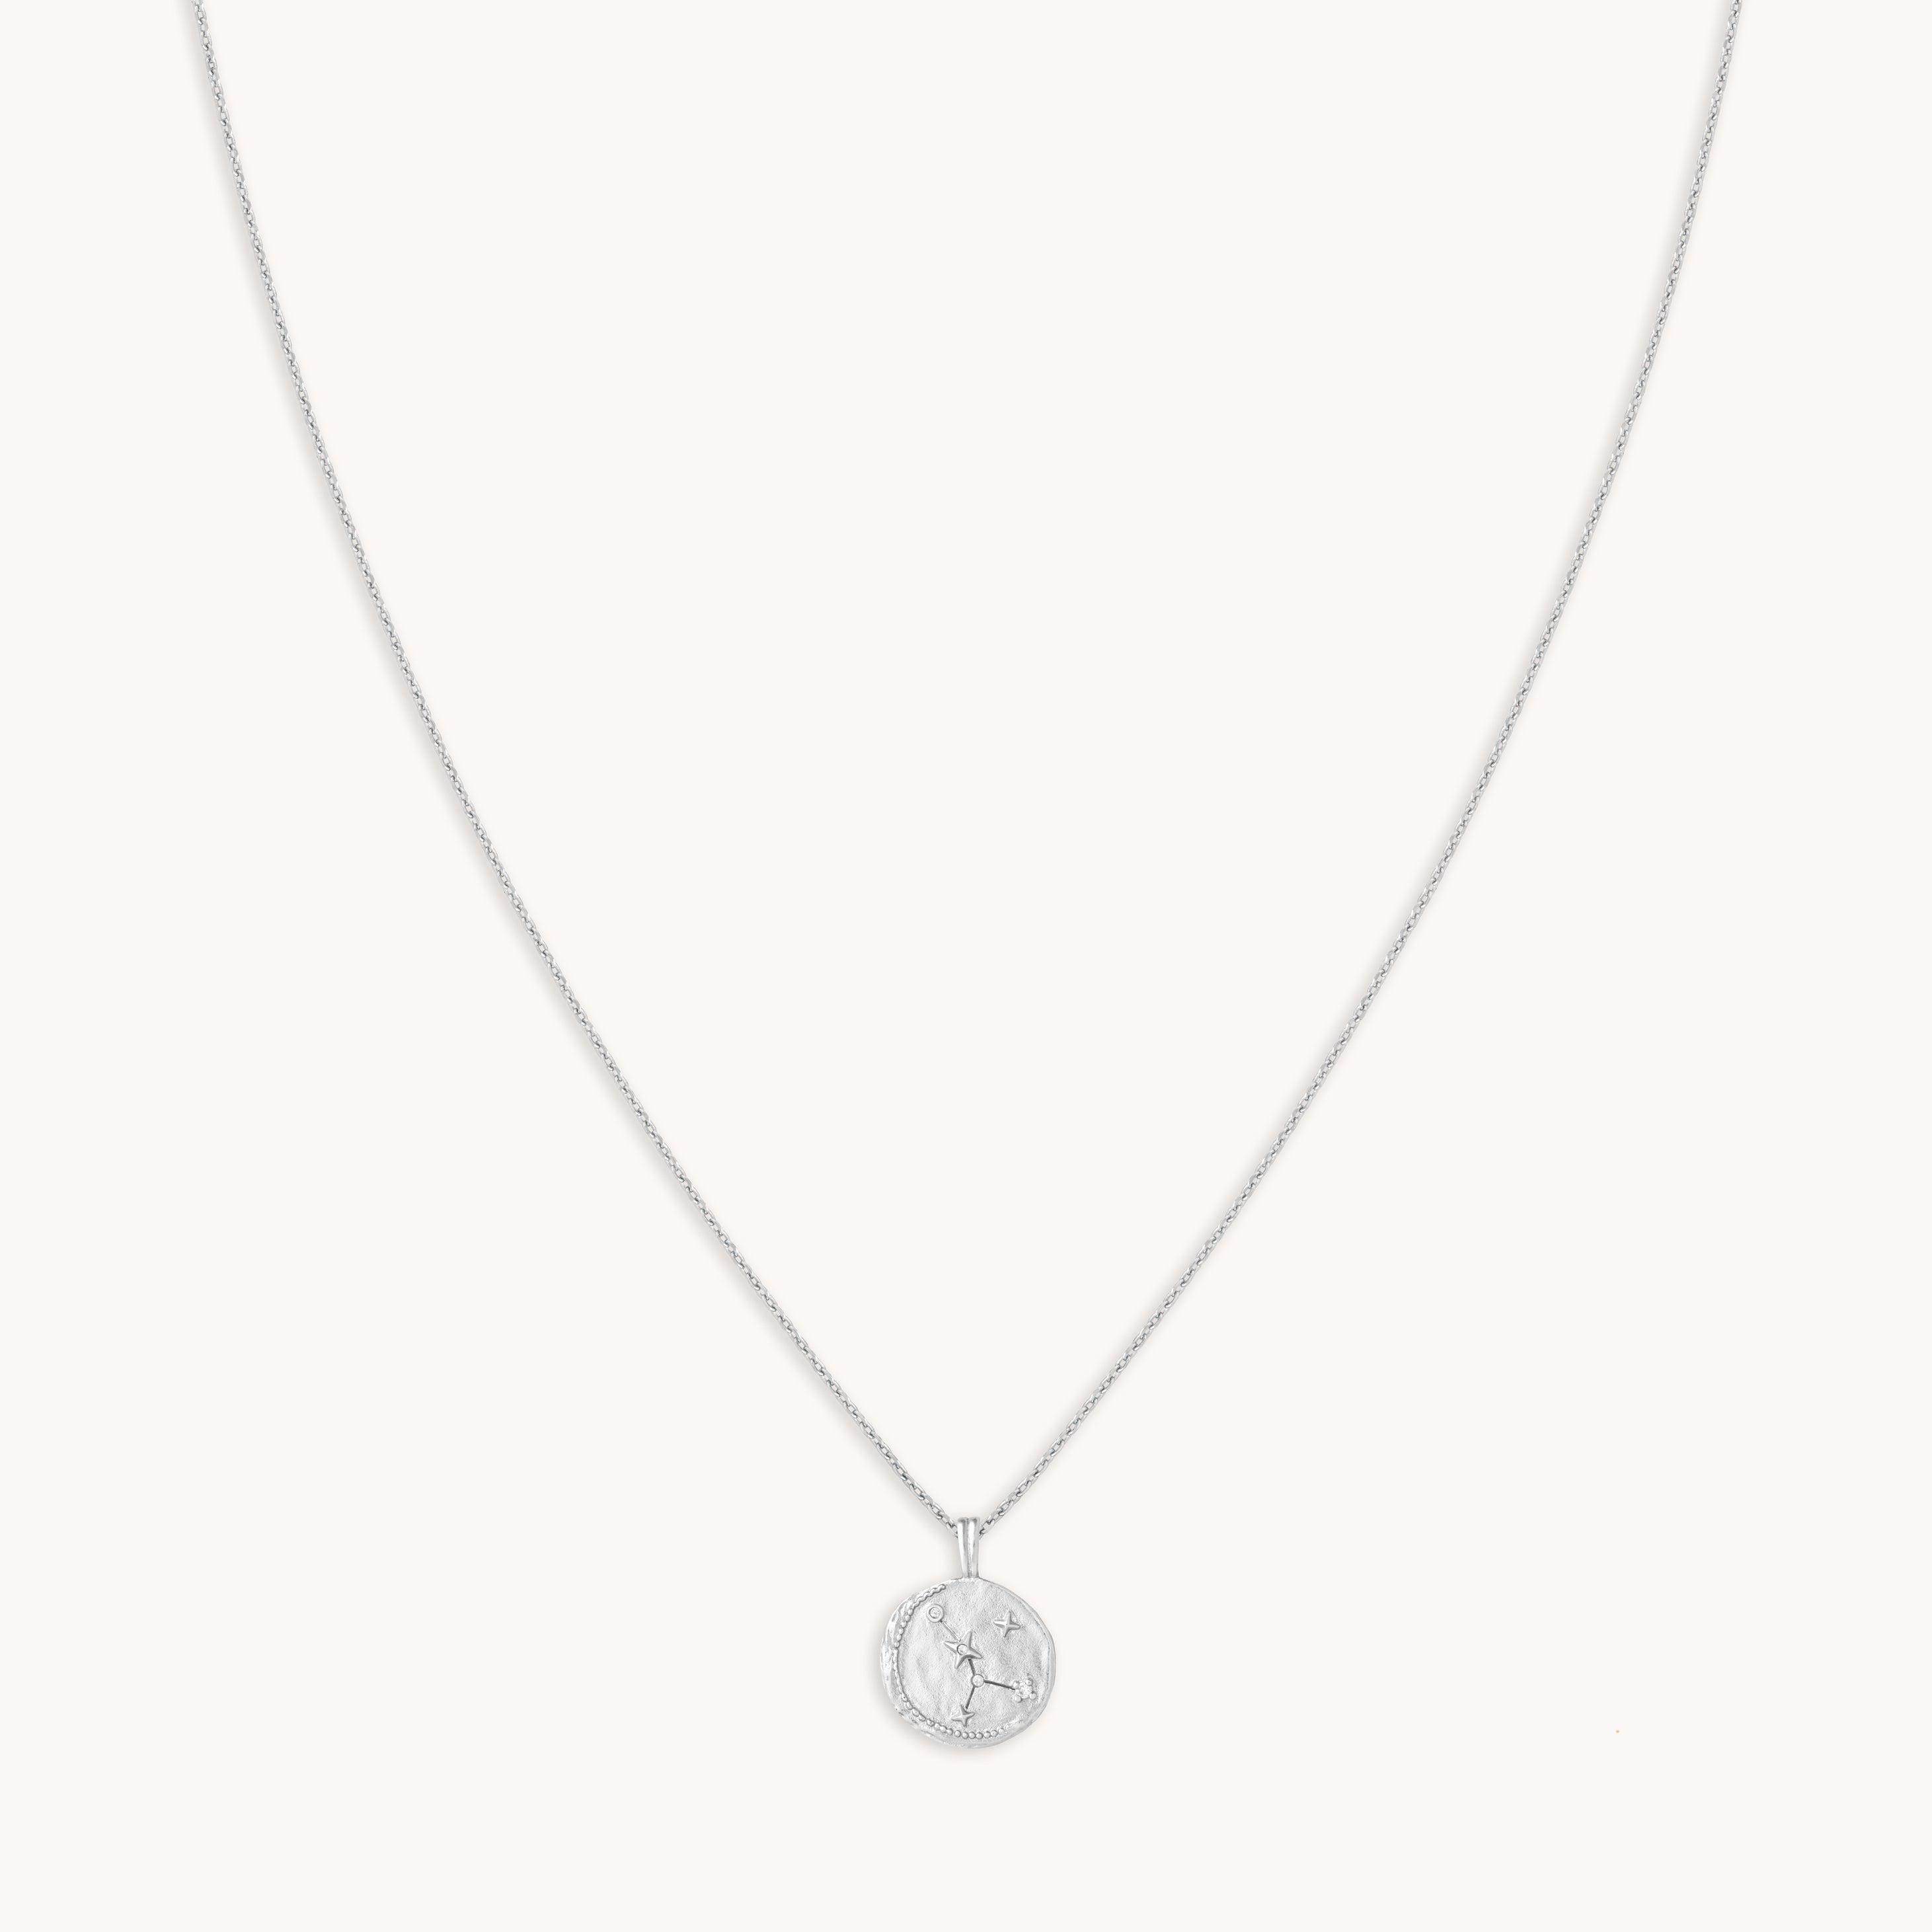 Cancer Zodiac Silver Pendant Necklace | Astrid & Miyu Necklaces